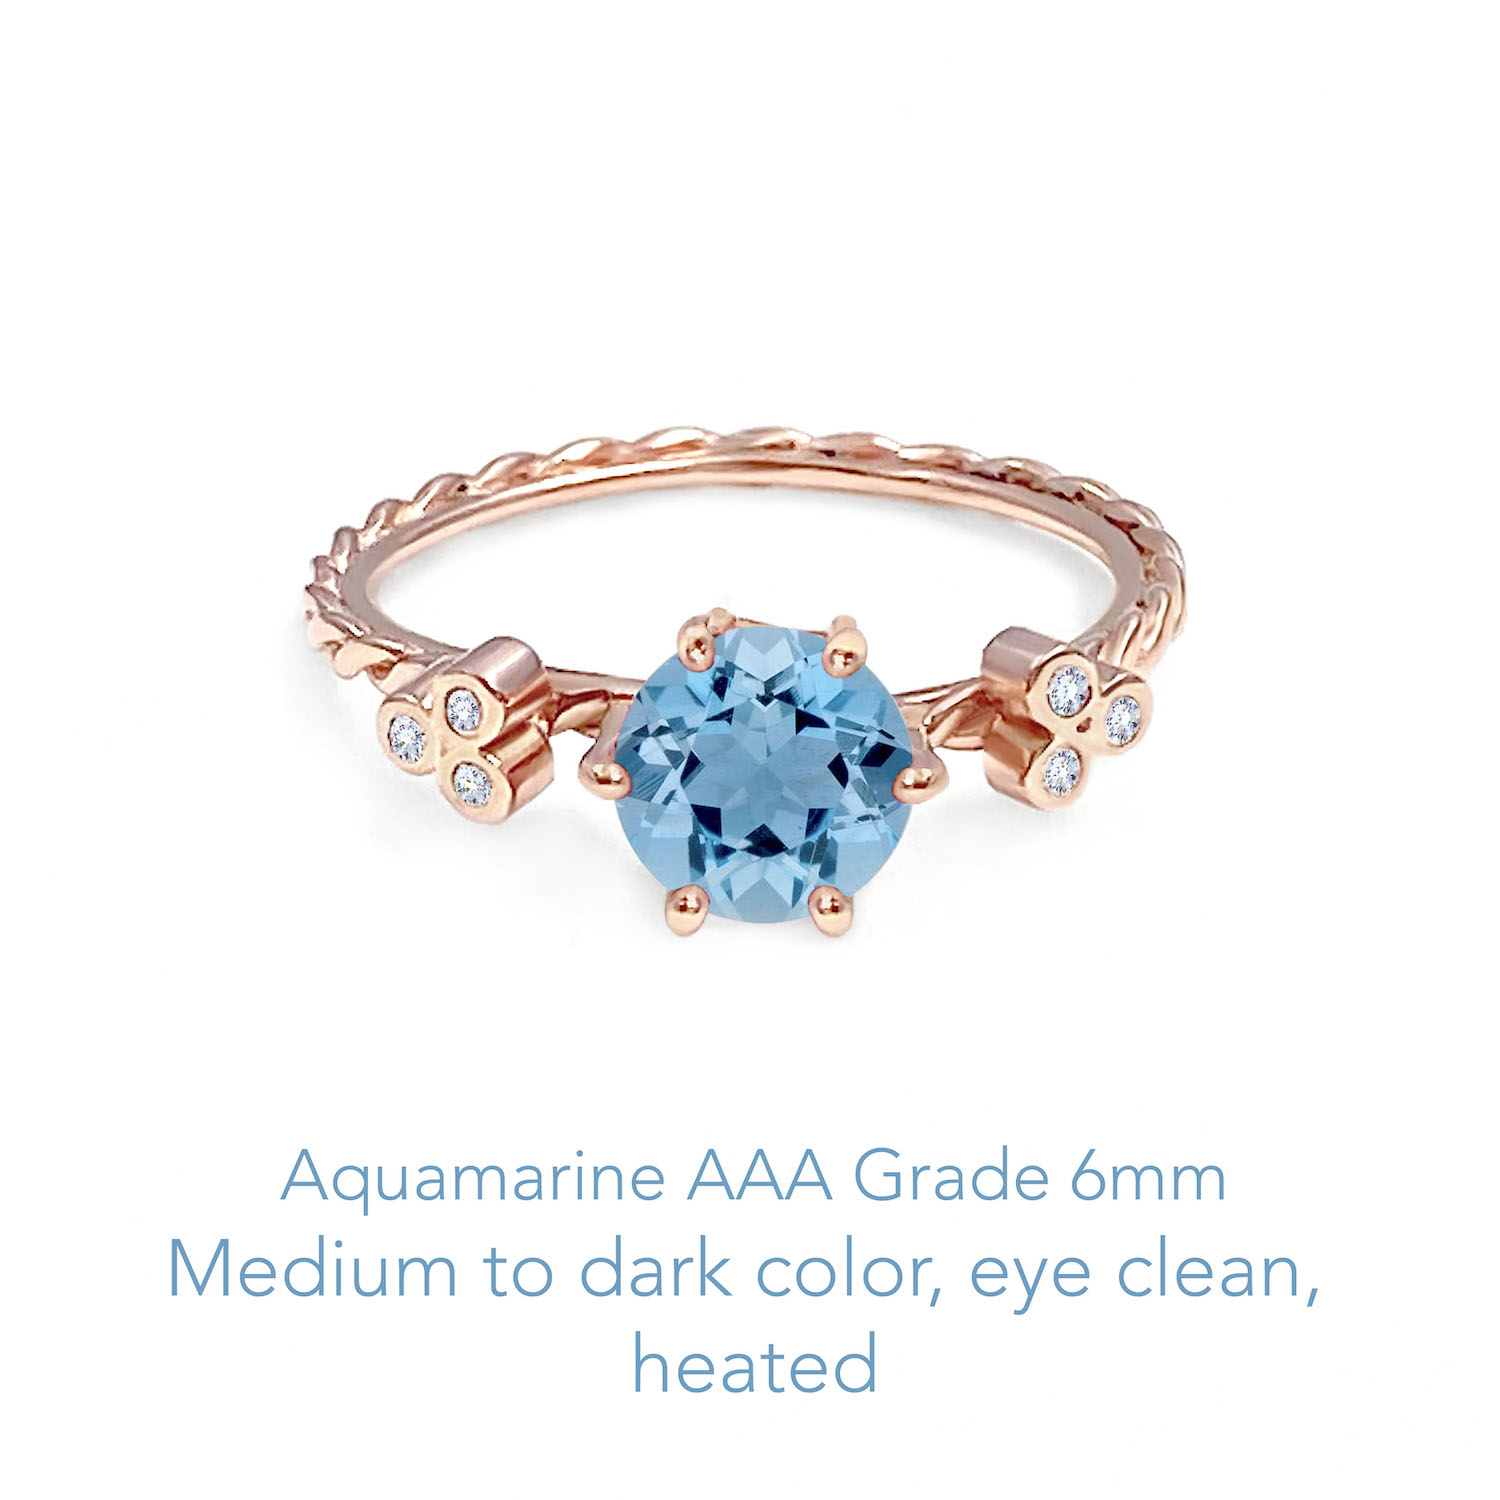 Aquamarine AAA